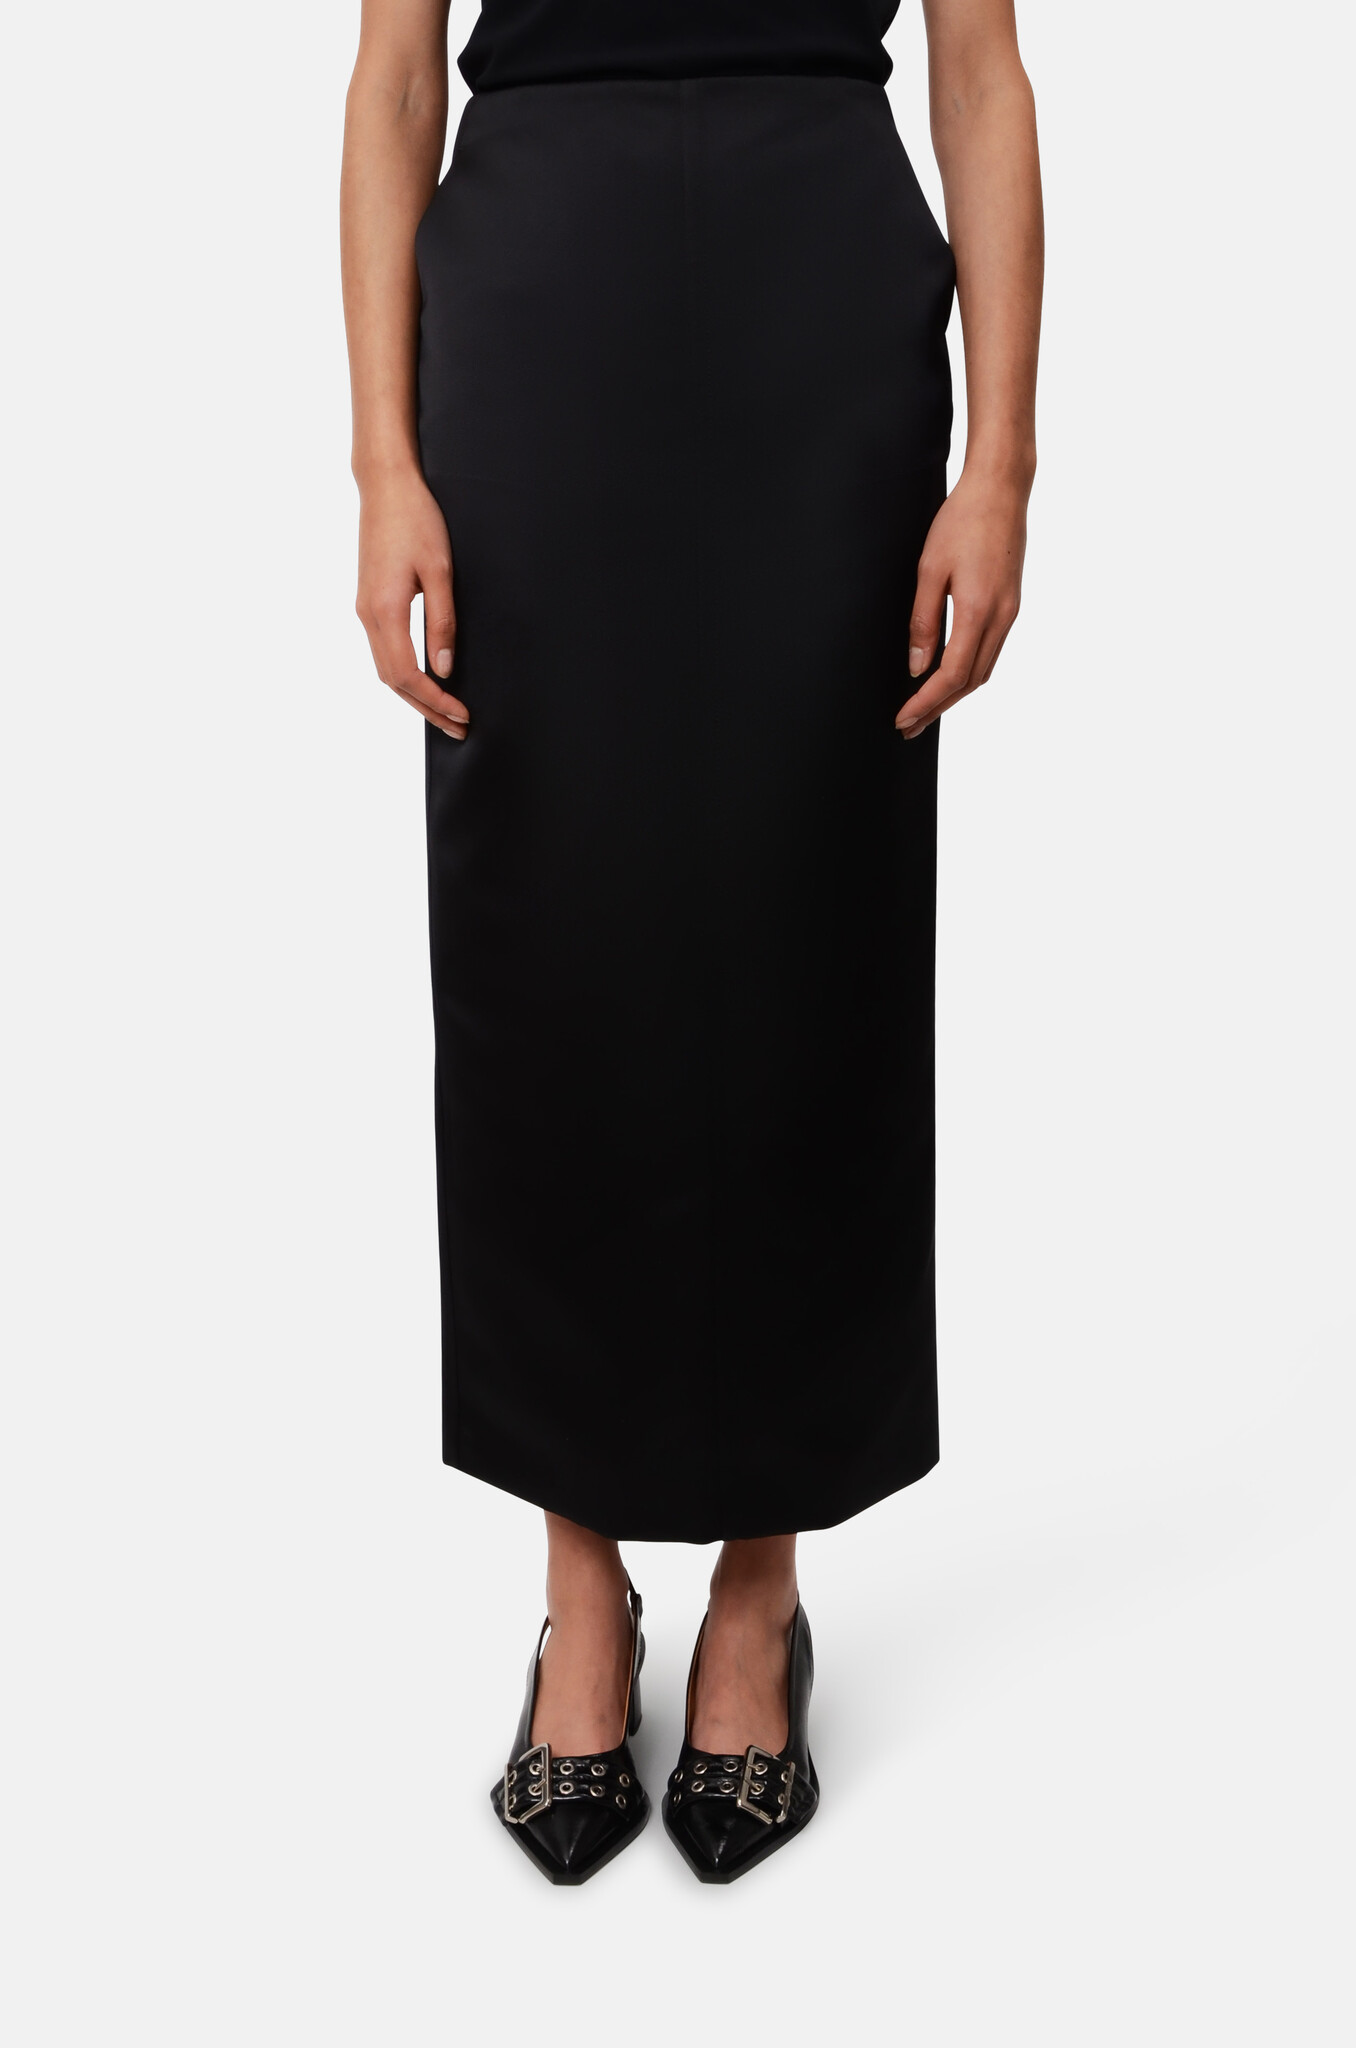 PHILOSOPHY - Duchesse Skirt - Premium womenswear & accessories